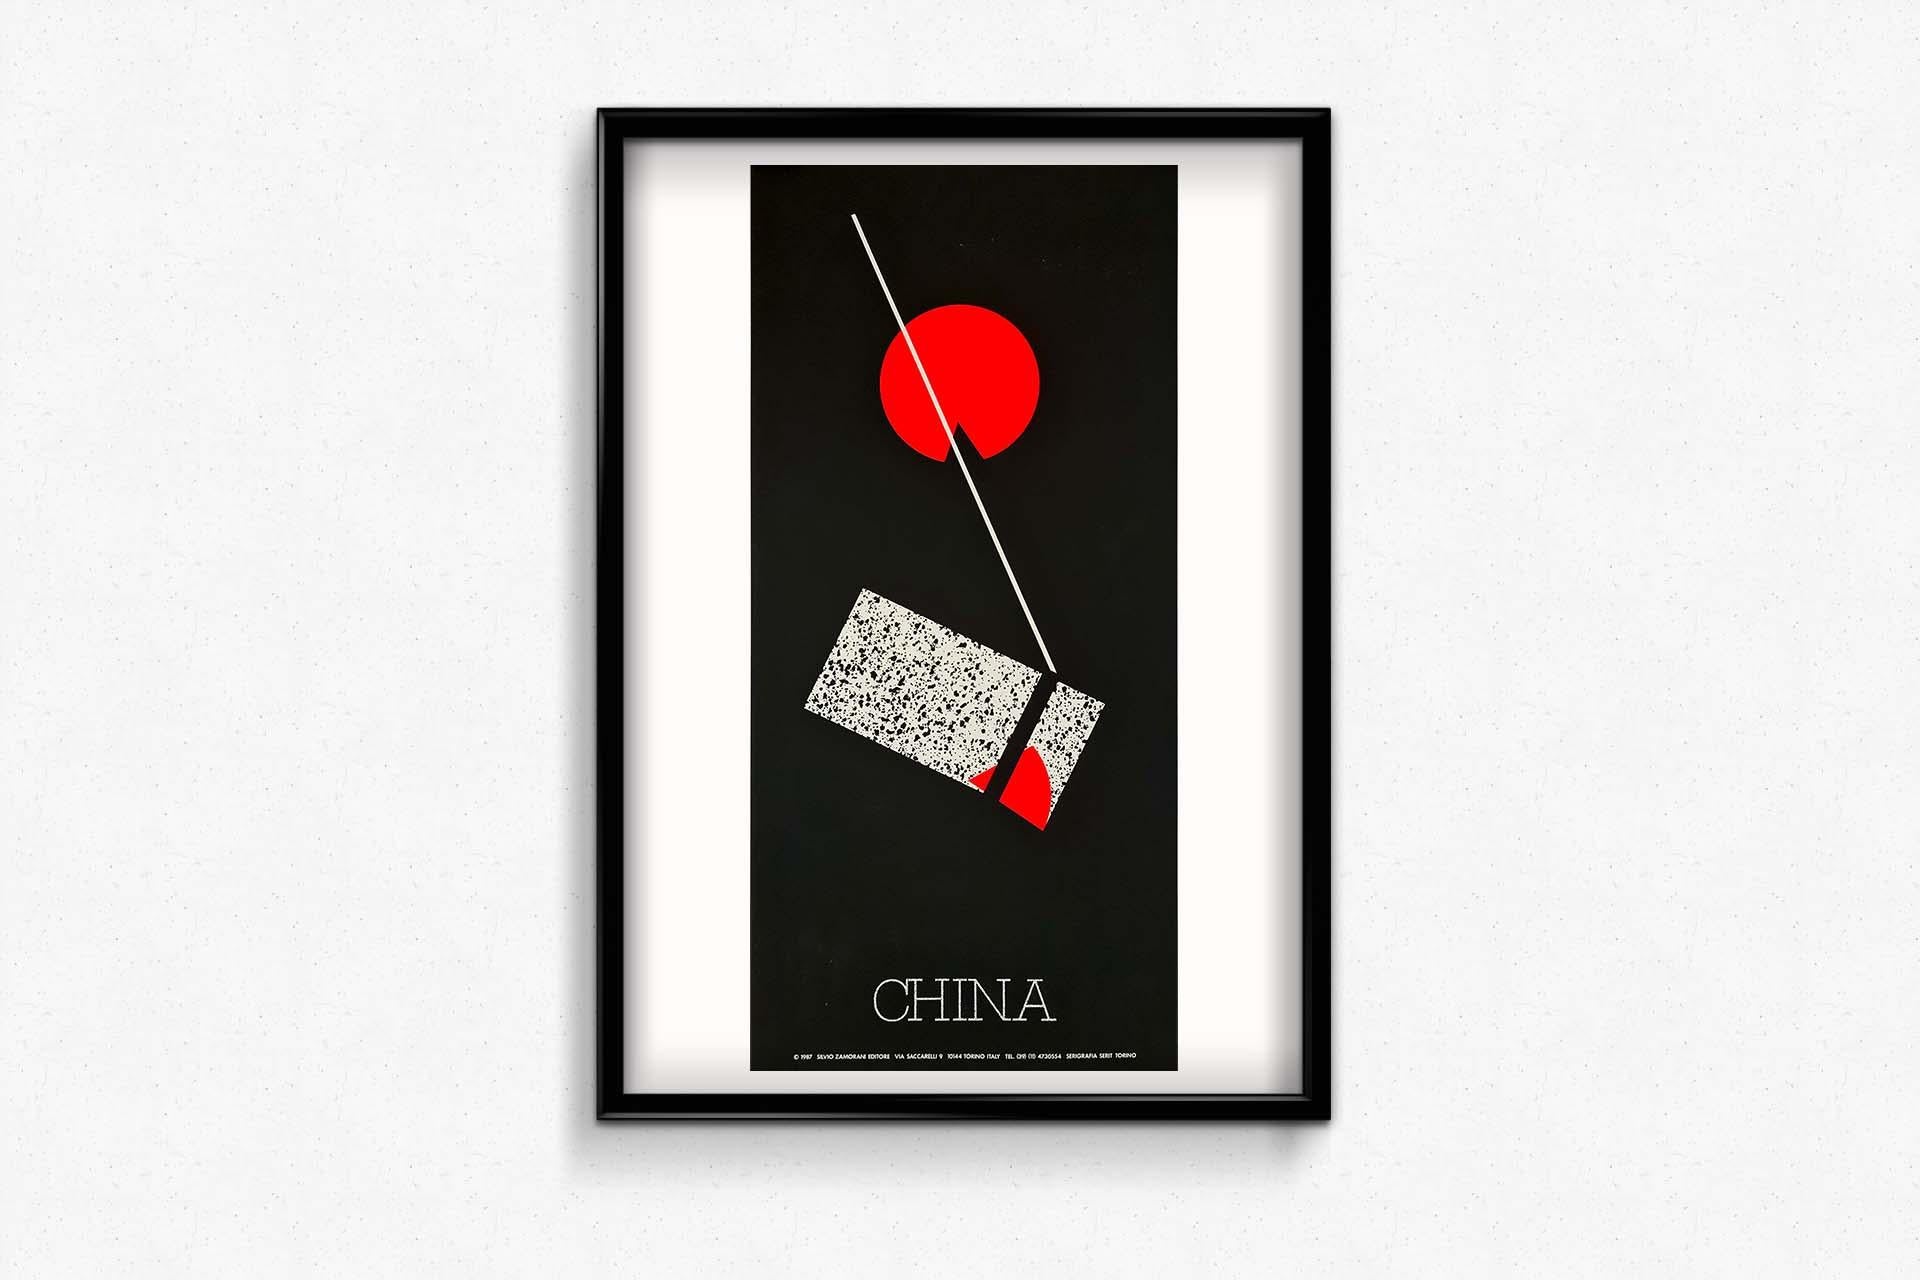 Sérigraphie

Magnifique affiche de design asiatique sérigraphiée sur soie éditée par Silvio Zamorani

Chine - Abstrait - Design

Silvio Zamorani